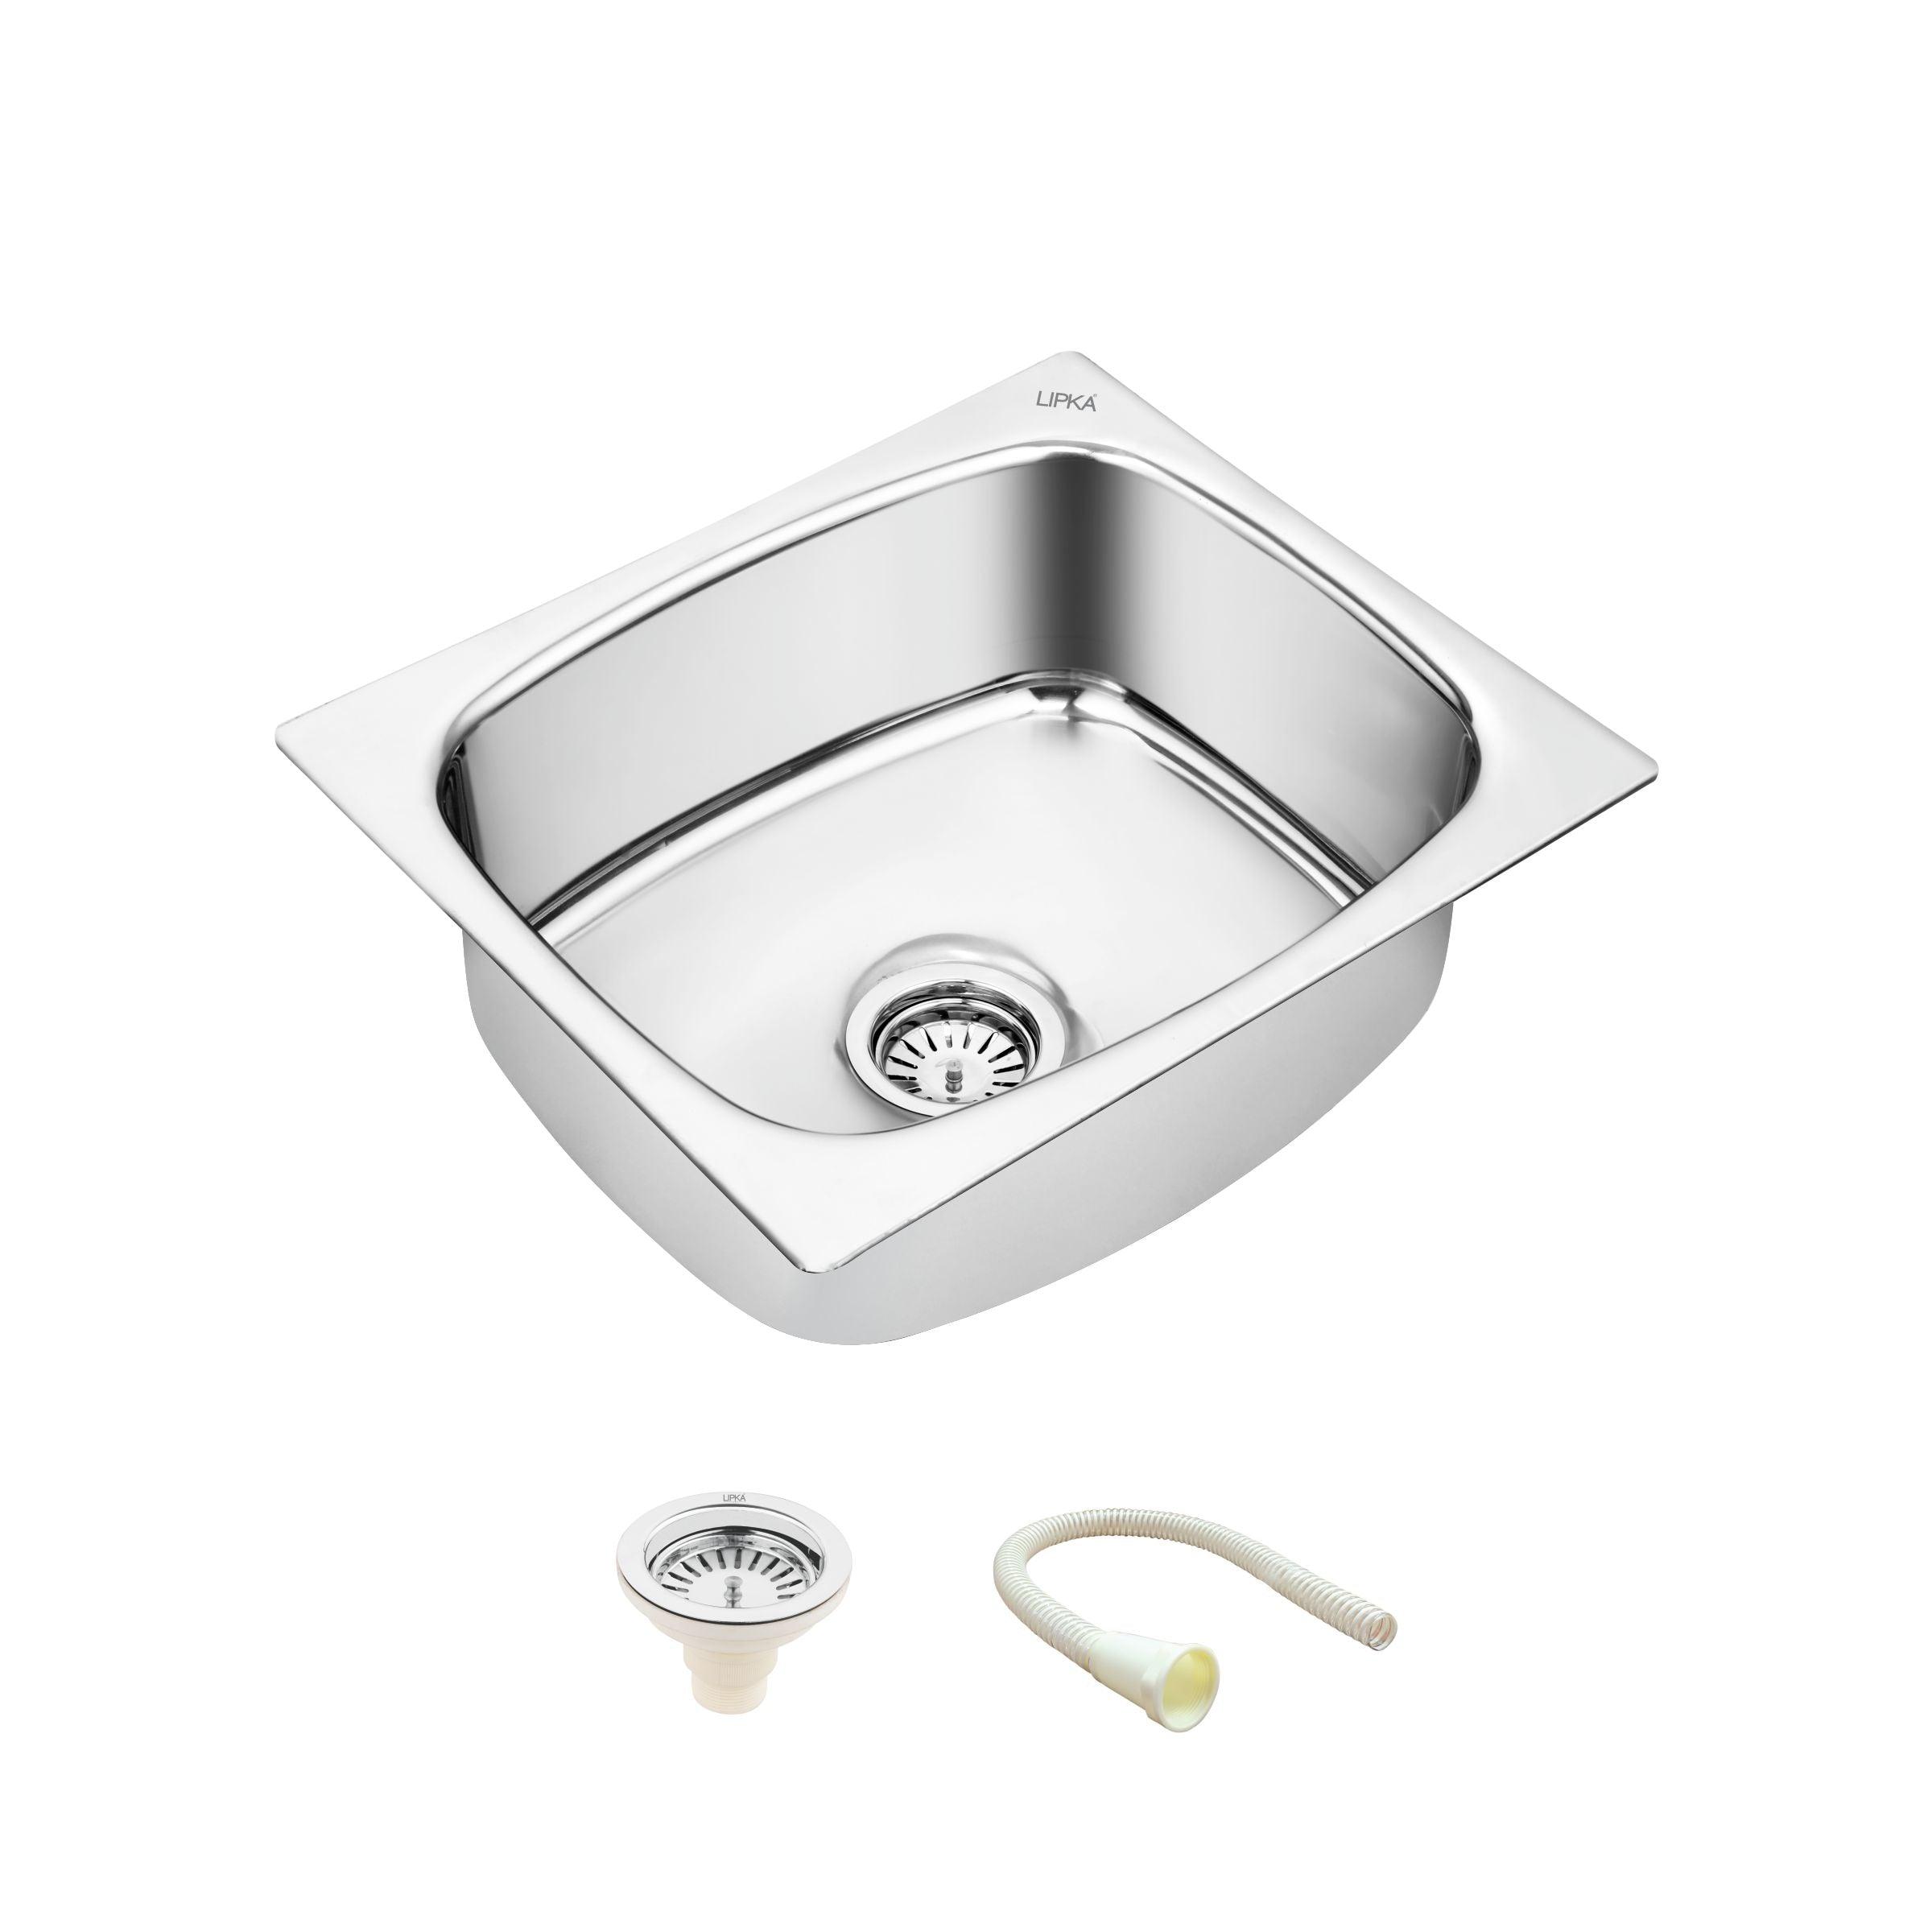 Round Single Bowl Kitchen Sink (18 x 16 x 8 Inches) - LIPKA - Lipka Home